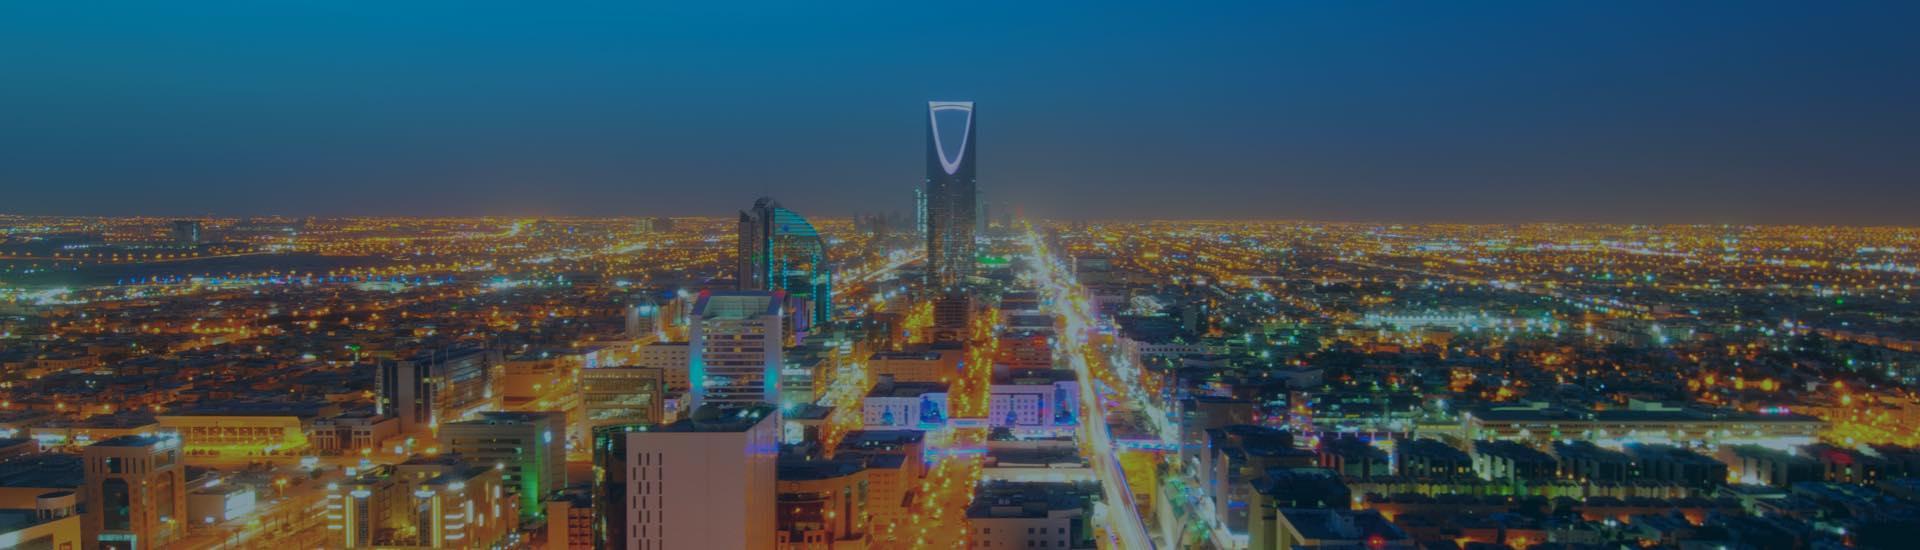 ابحث عن الفنادق في الرياض